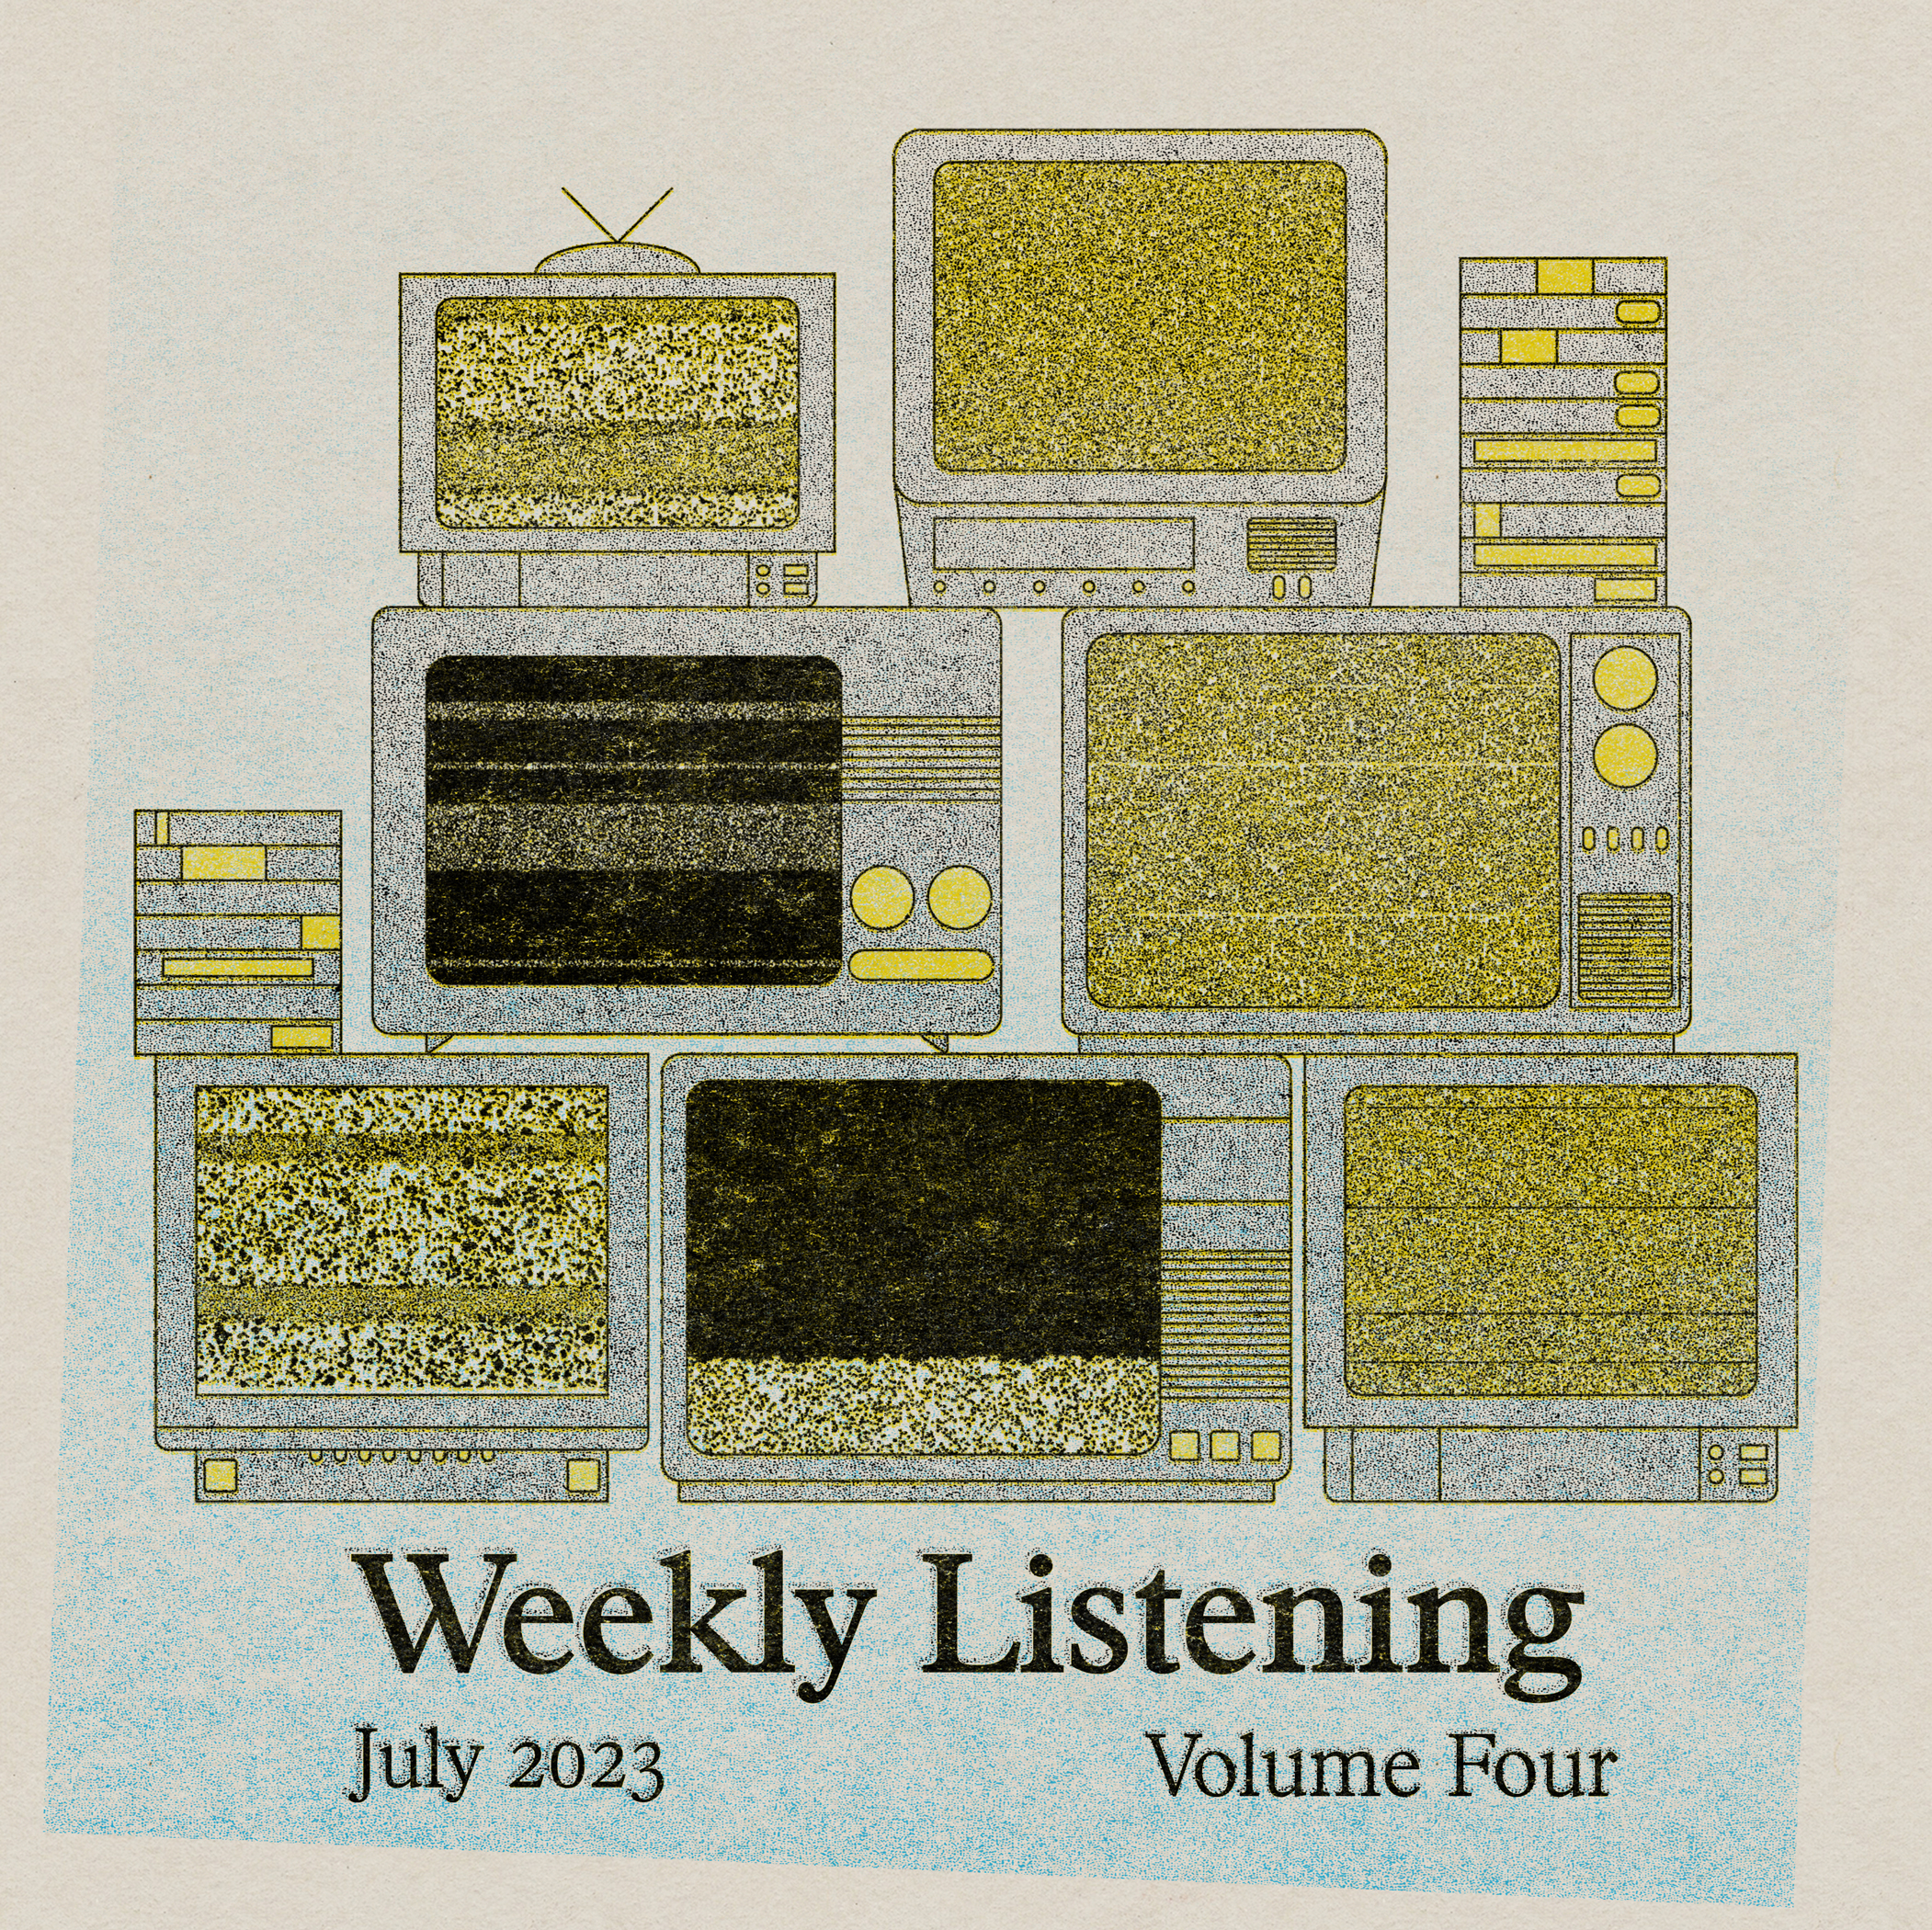 Weekly Listening July 2023 volume 4